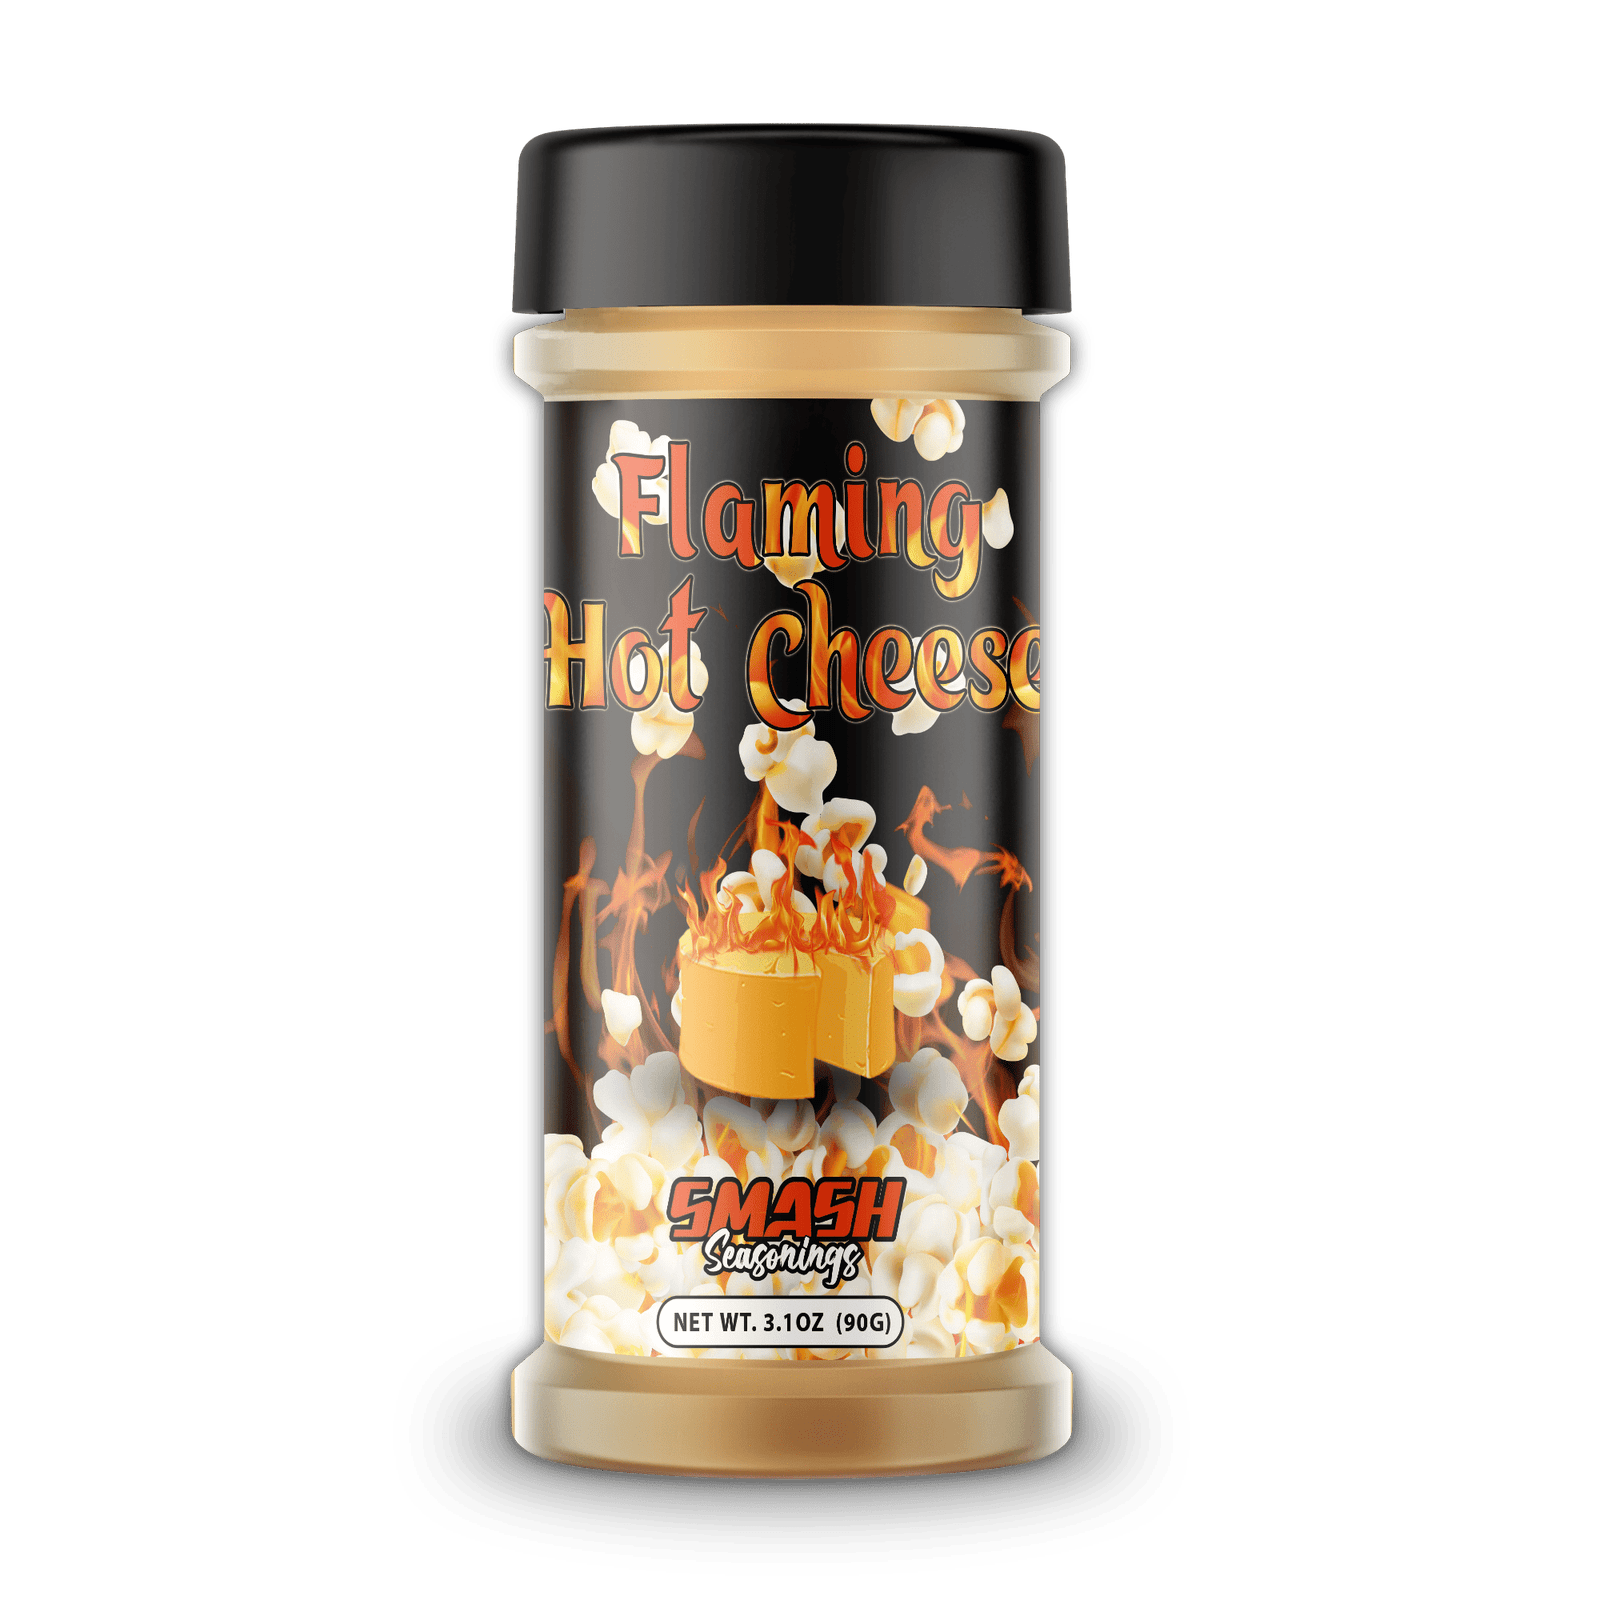 Flamin Hot Cheetos Powder/ Seasoning